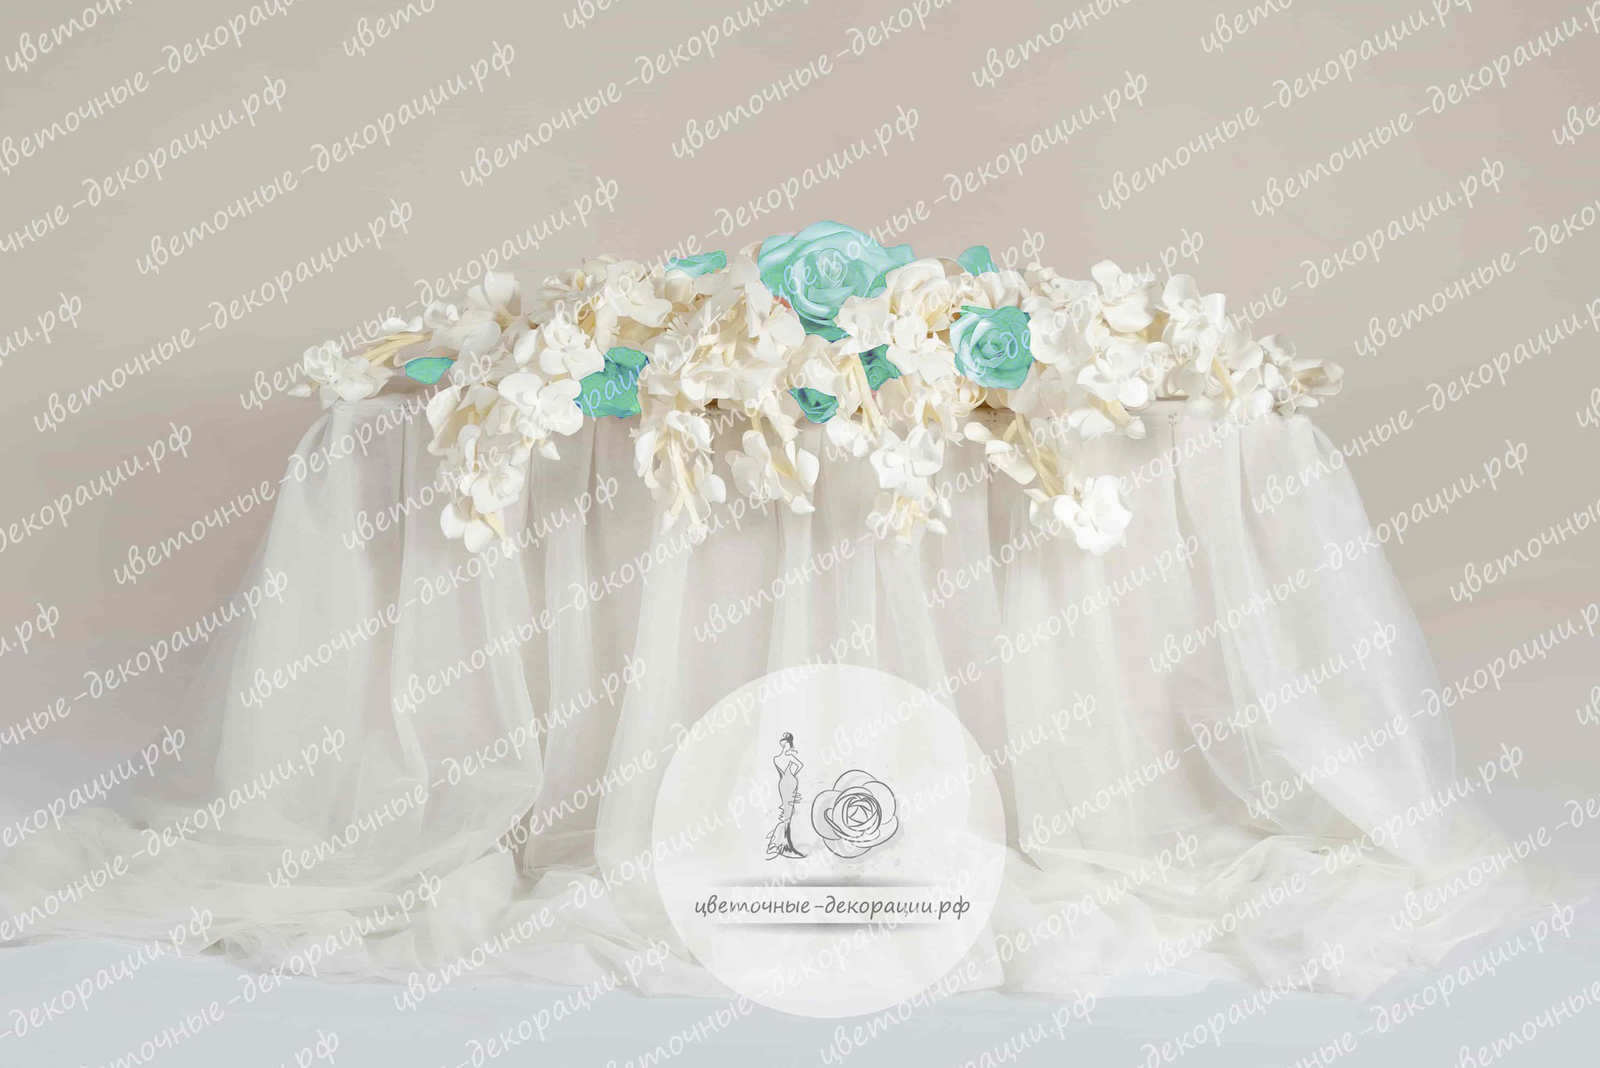 Оформление свадебного стола в цвете тиффани